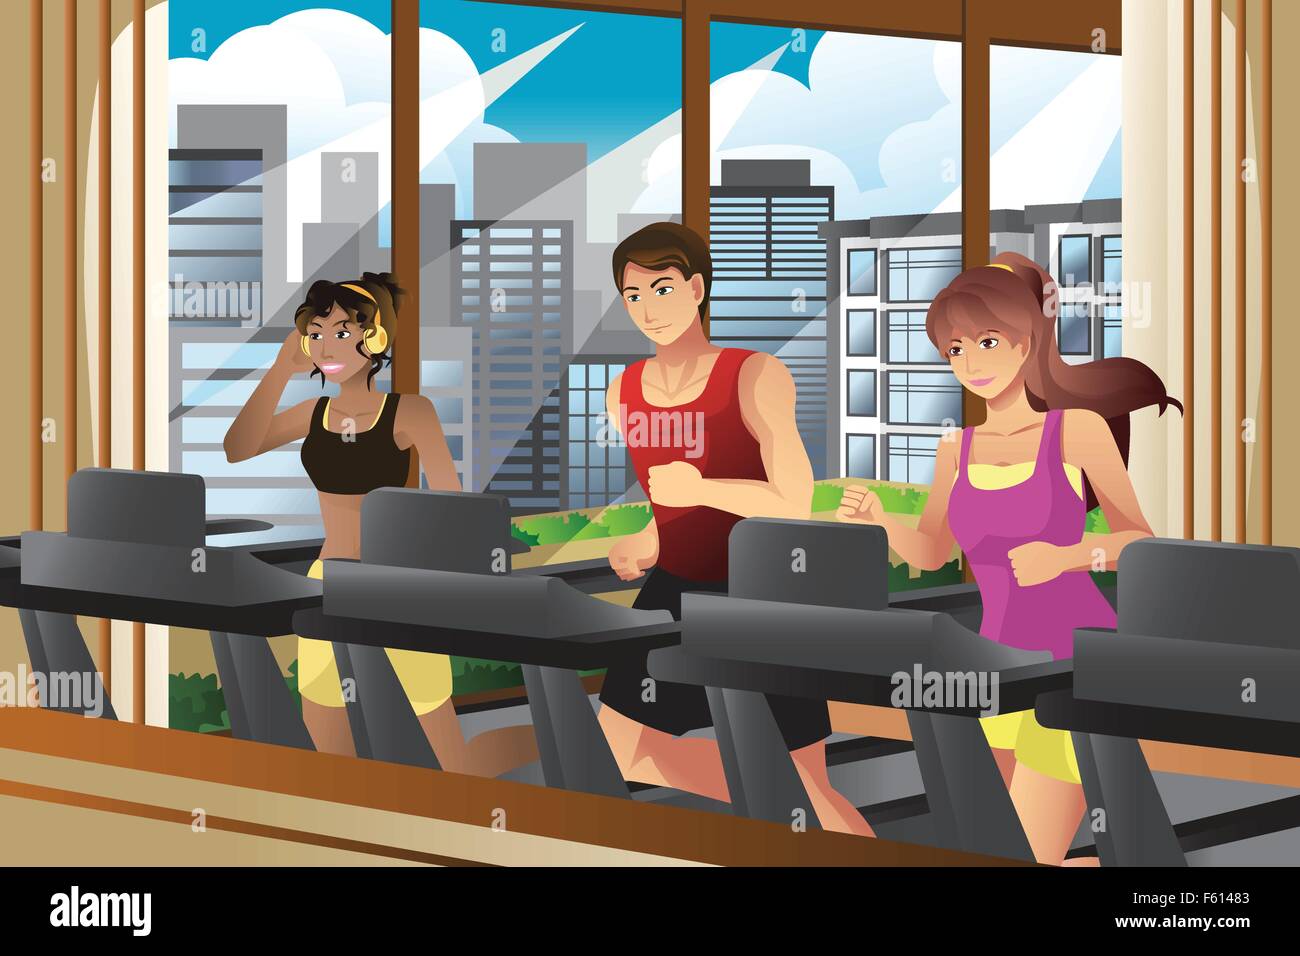 Eine Vektor-Illustration von Menschen laufen auf Laufbändern in ein Fitness-Studio Stock Vektor